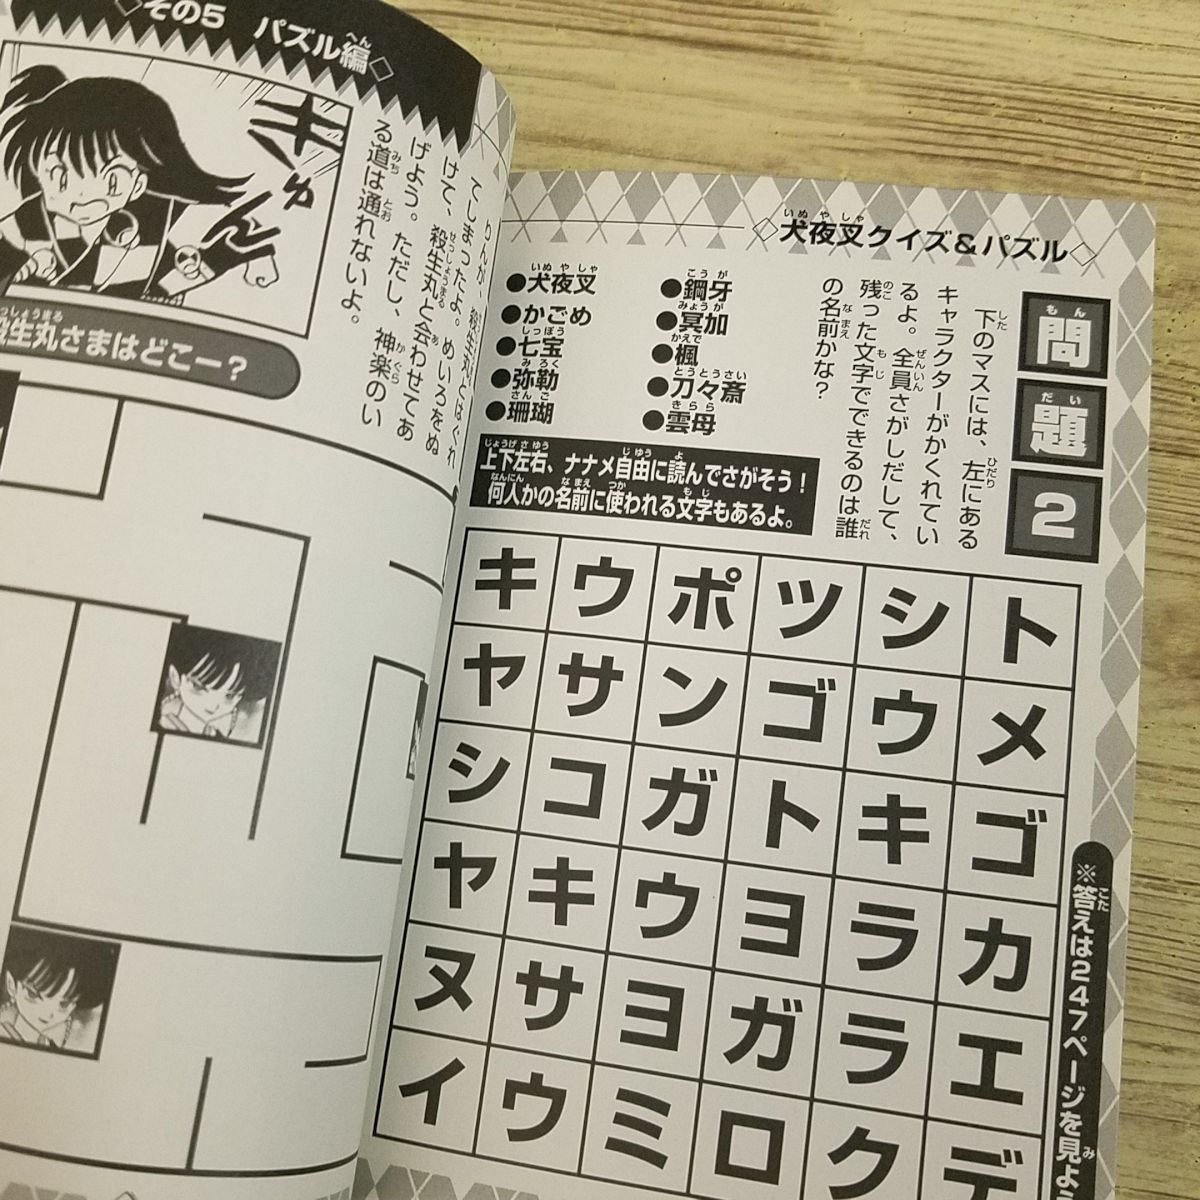  manga (манга) относящийся [ Inu Yasha секрет & тест различные предметы ] высота .. прекрасный . corotan library 184 библиотека размер 